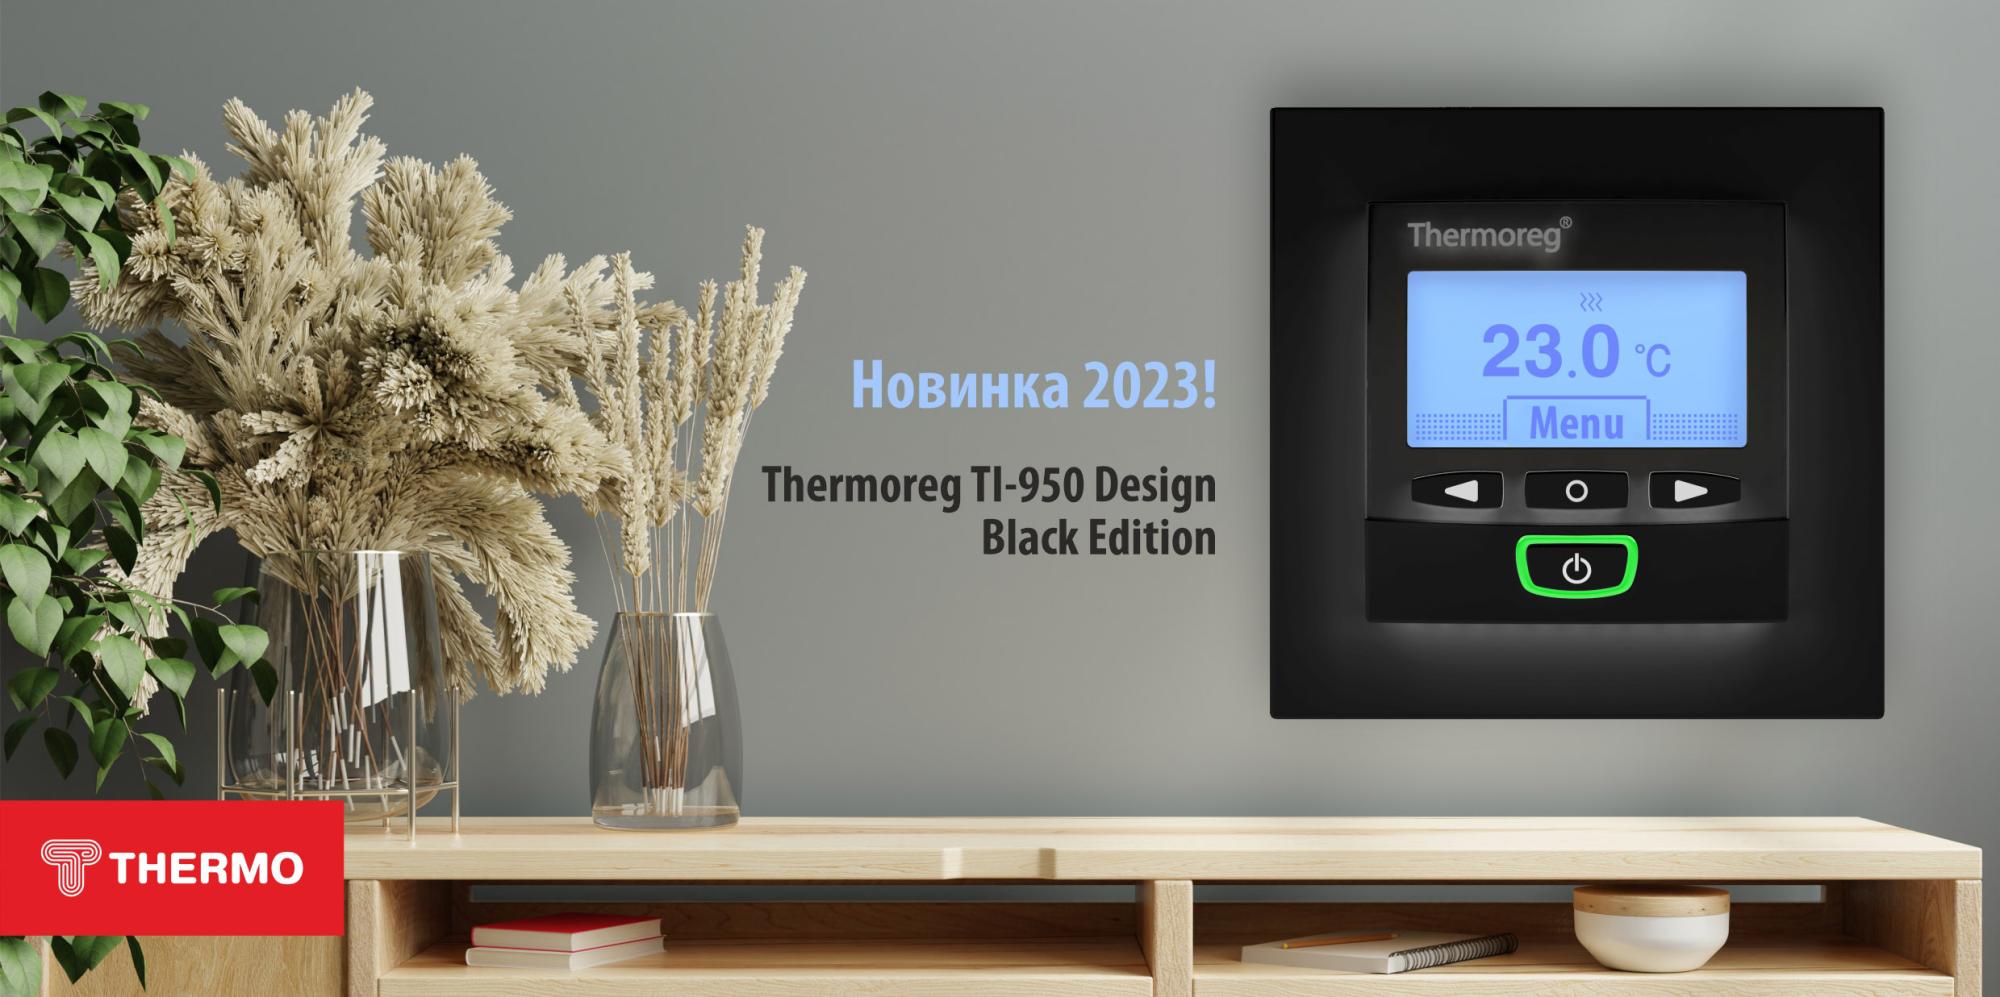 Встречайте новинку 2023 года - Thermoreg TI-950 Design Black Edition